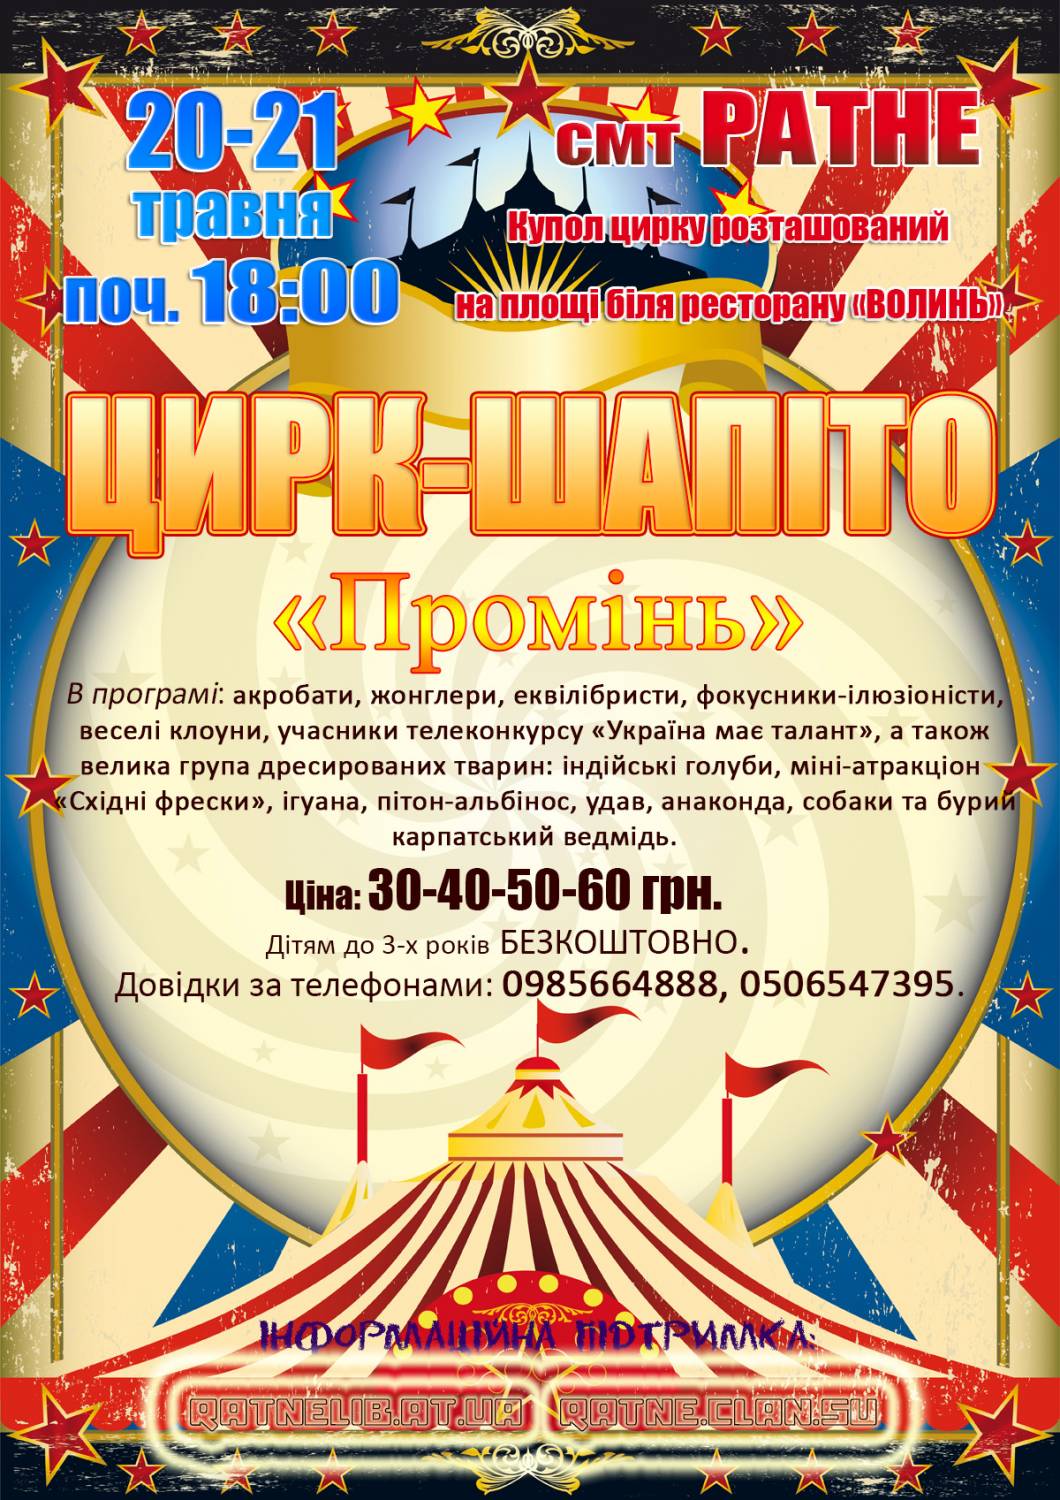 Цирк-шапіто “Промінь” у Ратне. 20-21 травня